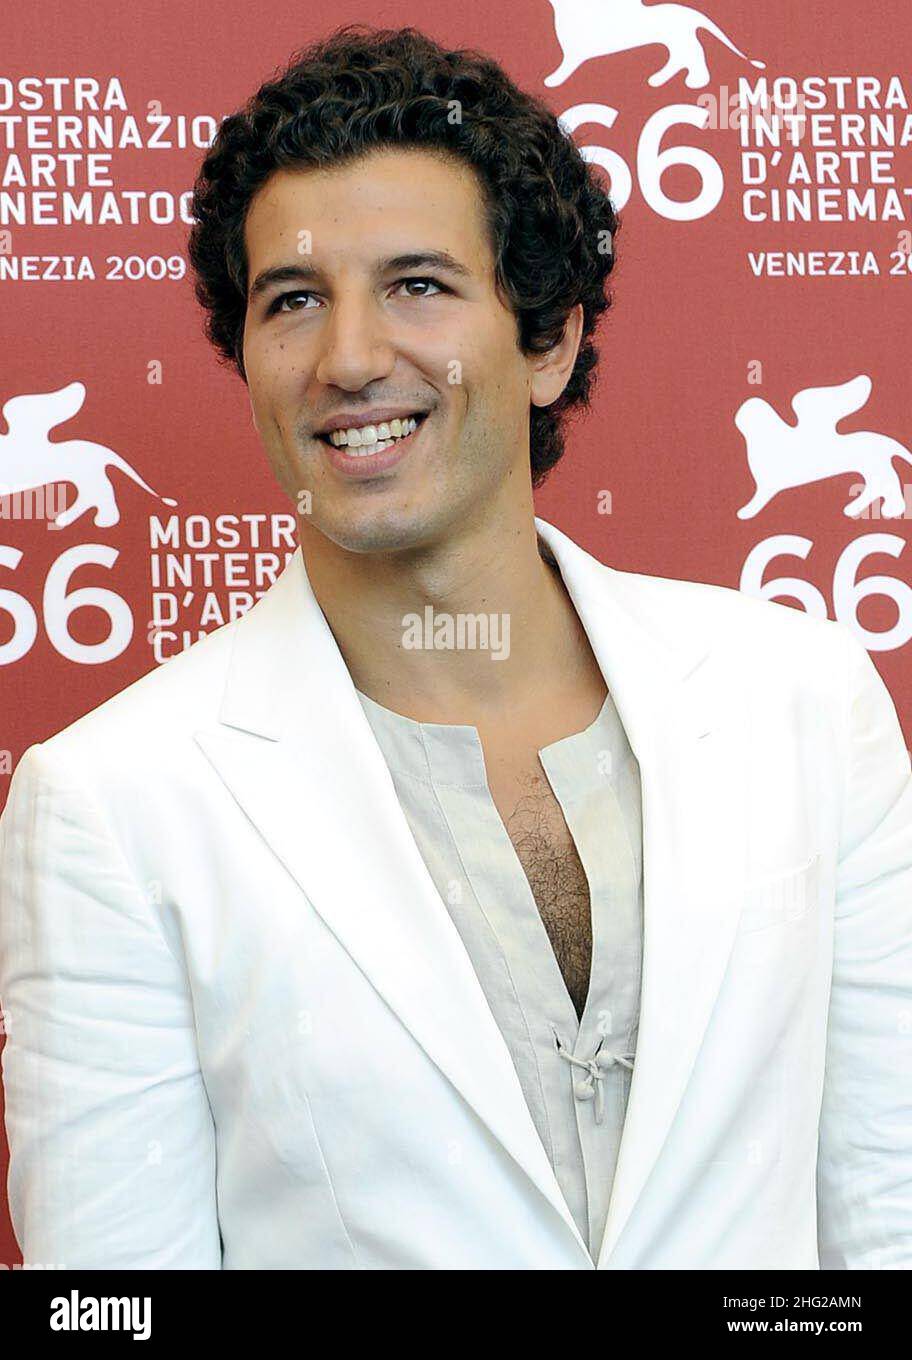 El actor Francesco Scianna asiste a la foto 'Baaria' celebrada en la Sala Grande durante el Festival de Cine de Venecia 66th en Venecia, Italia, el 2 de septiembre de 2009. Foto de stock